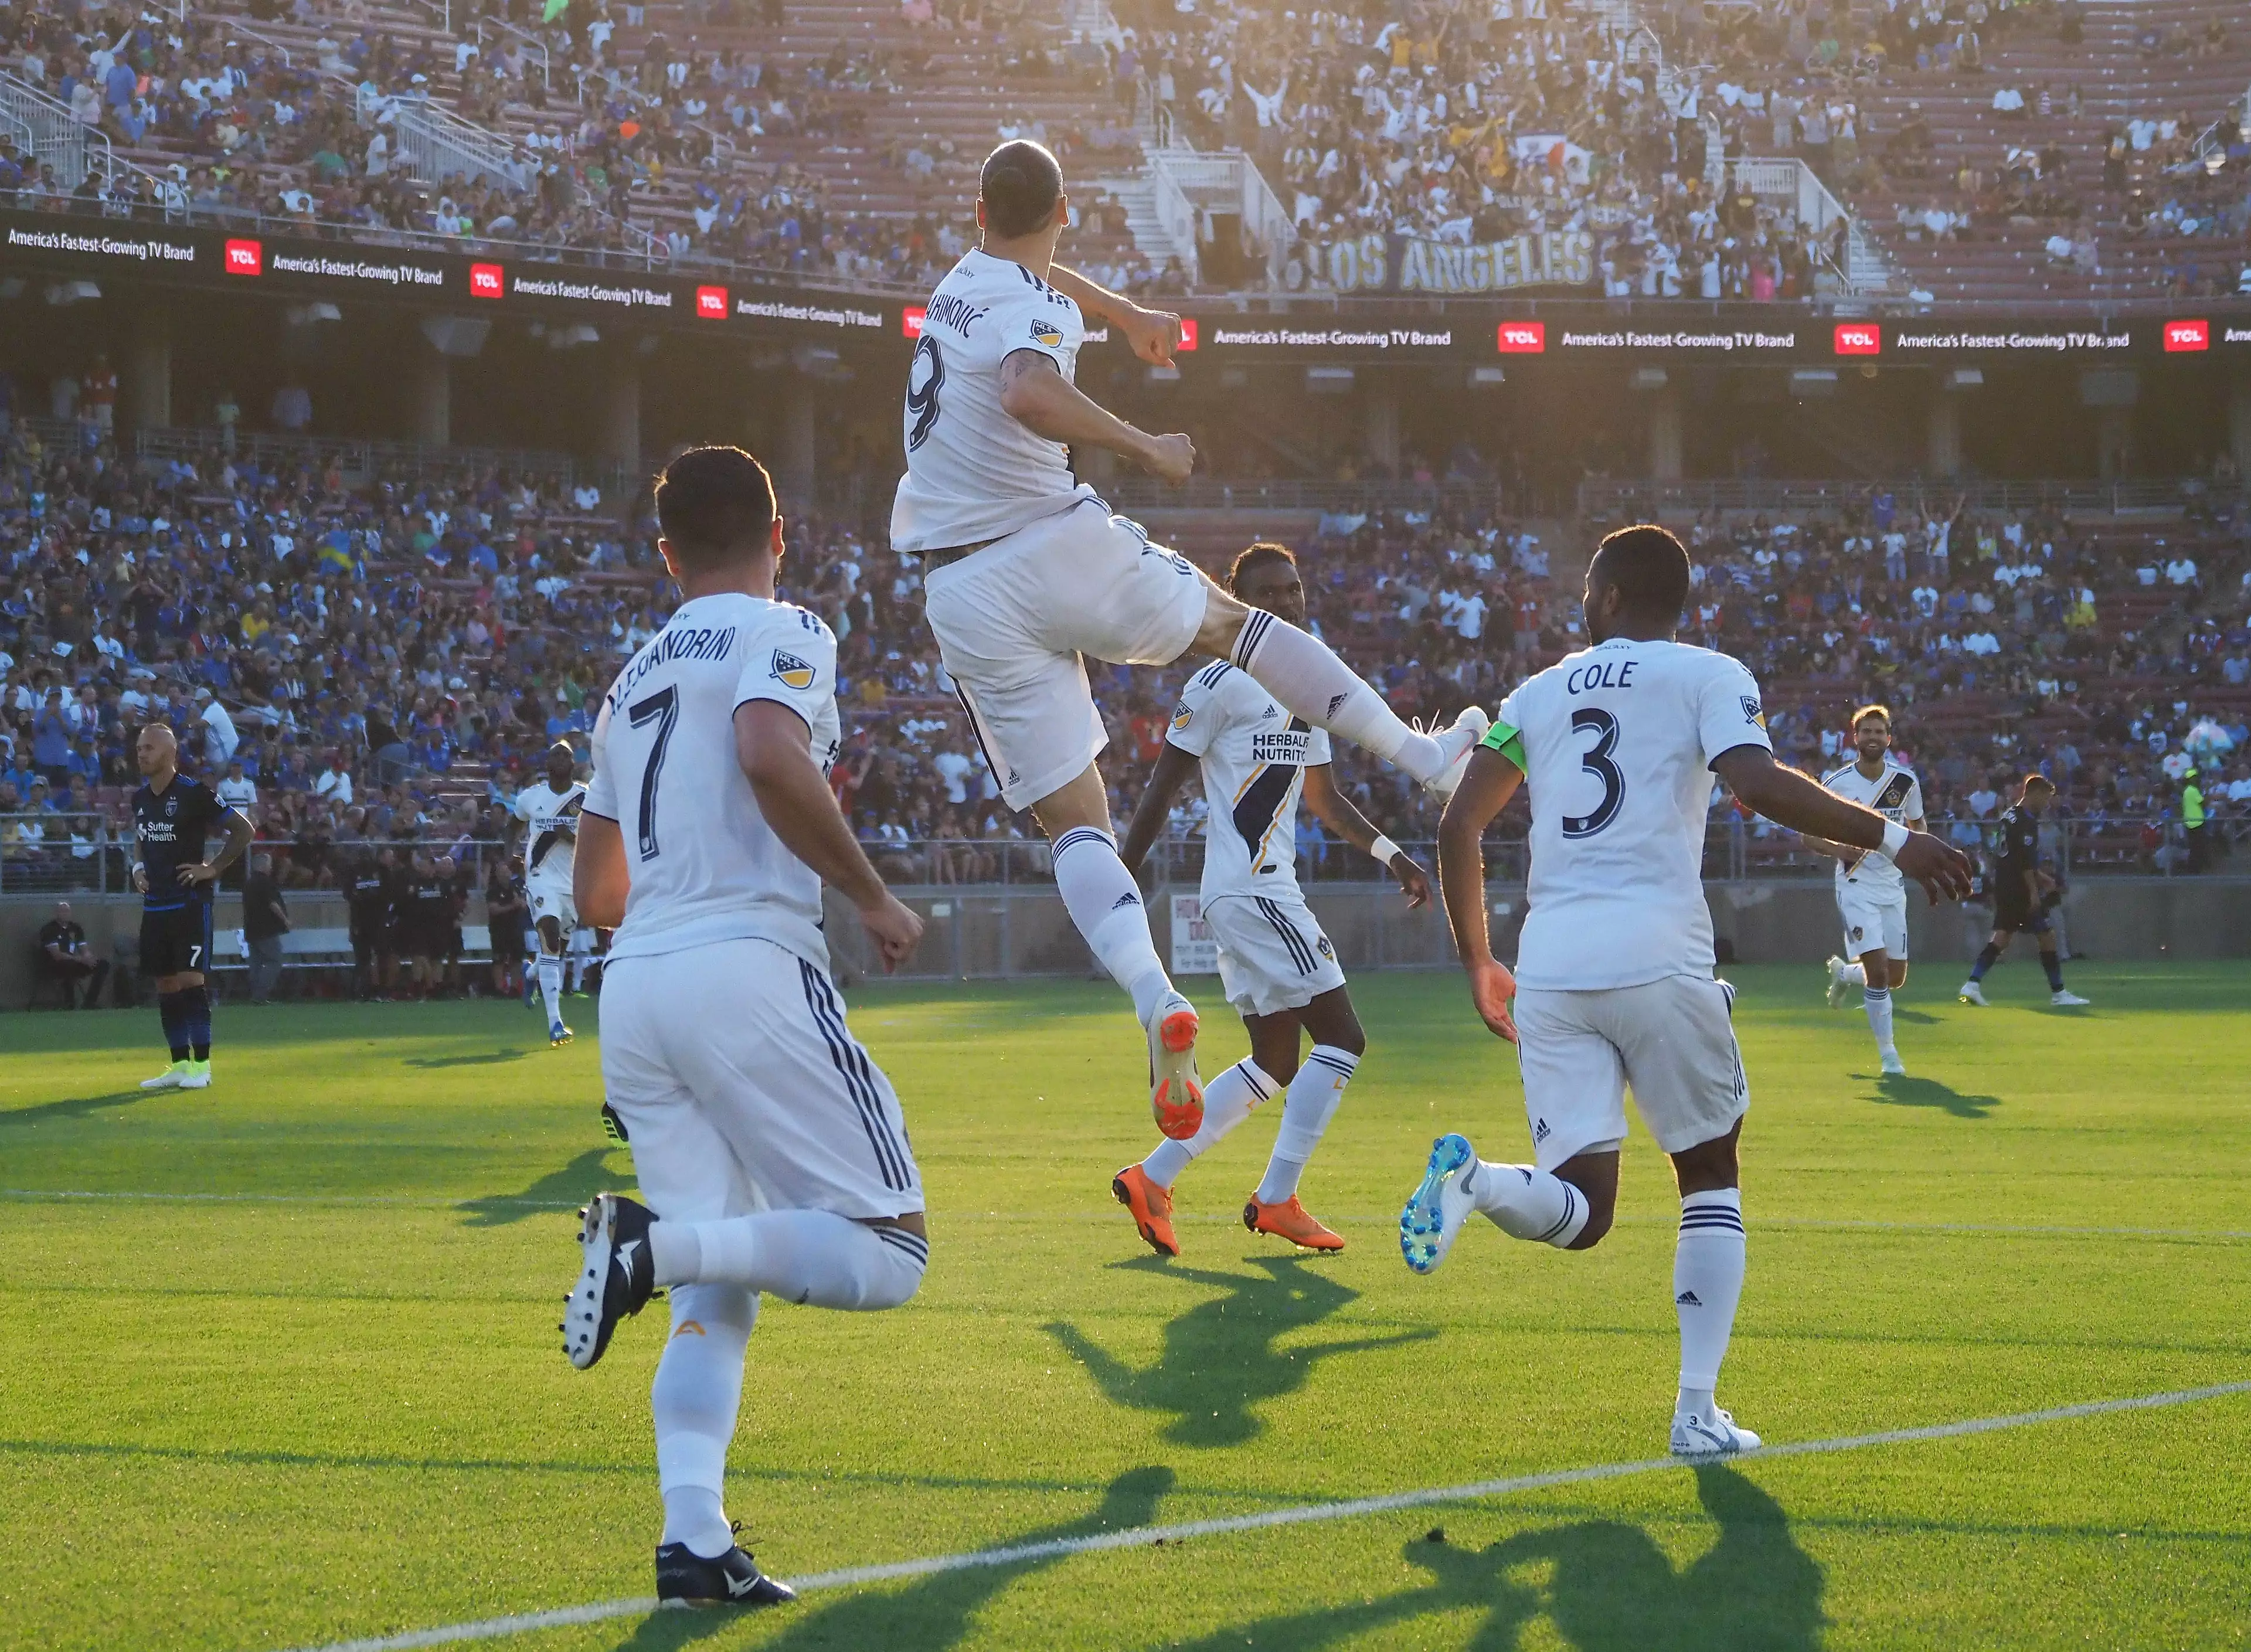 Ibrahimovic celebrates scoring a goal. Image: PA